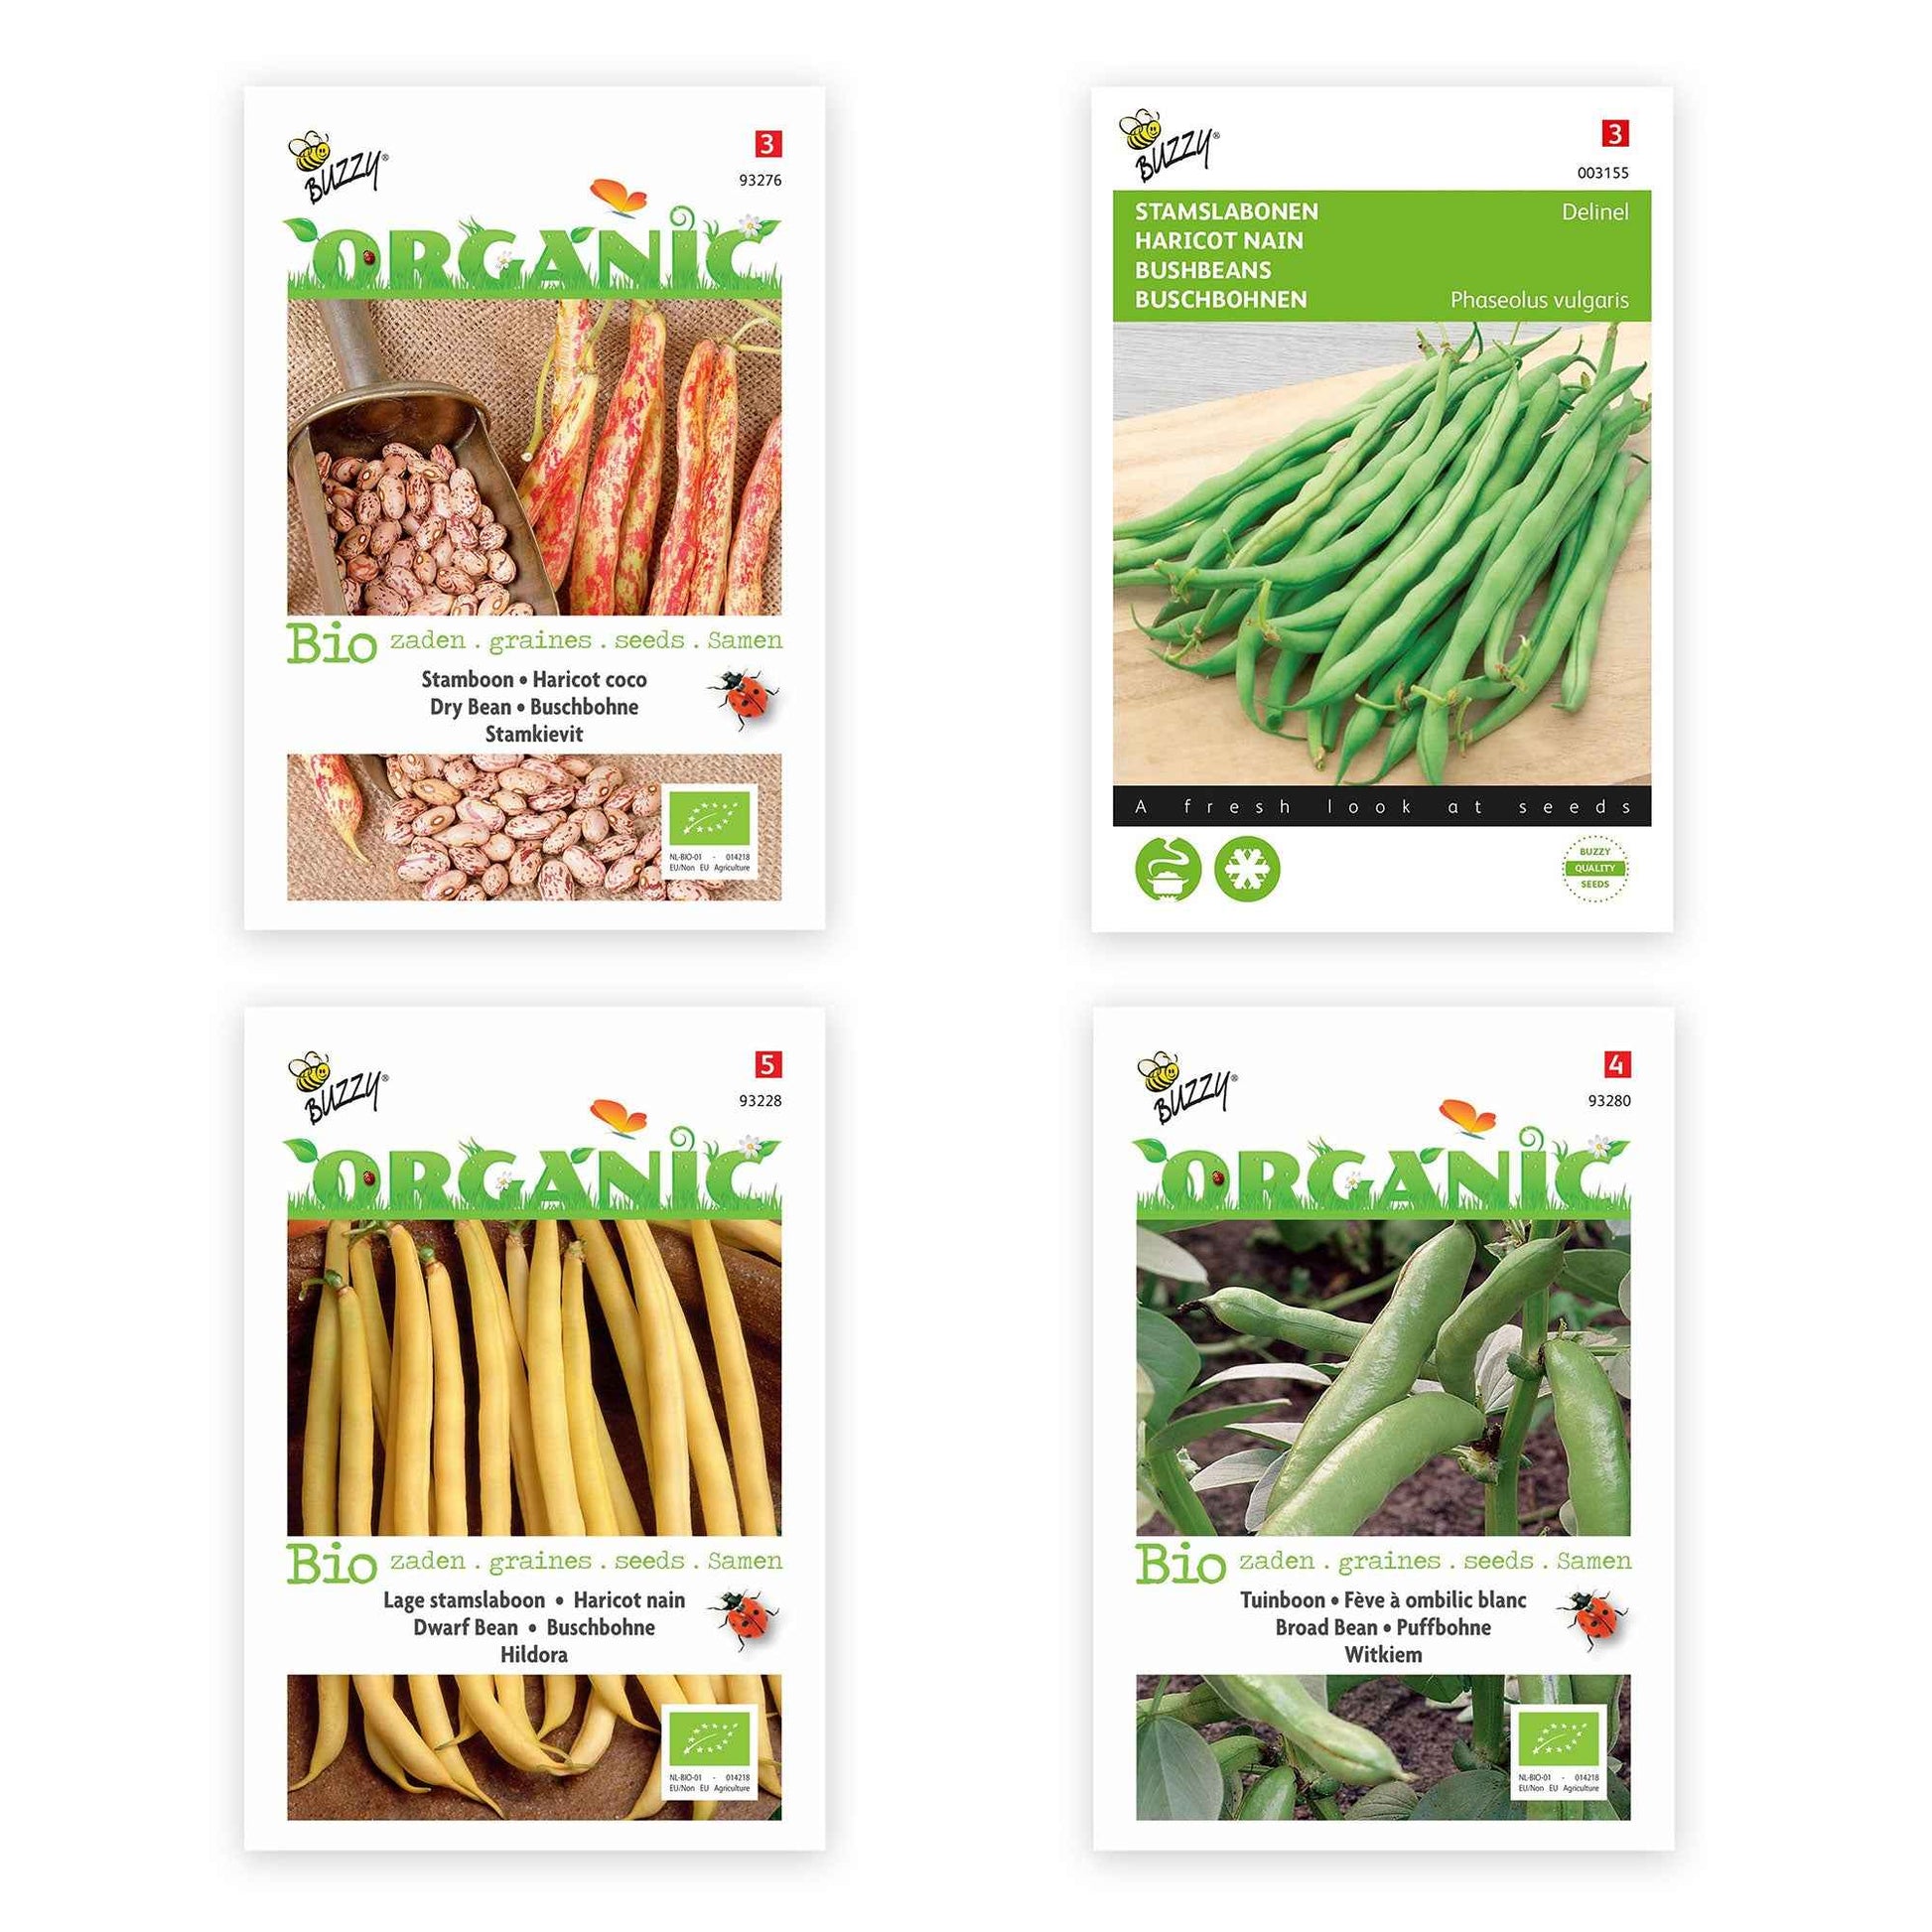 Paquet de haricots 'Haricots radicaux' 22 m² - Semences de légumes - Graines